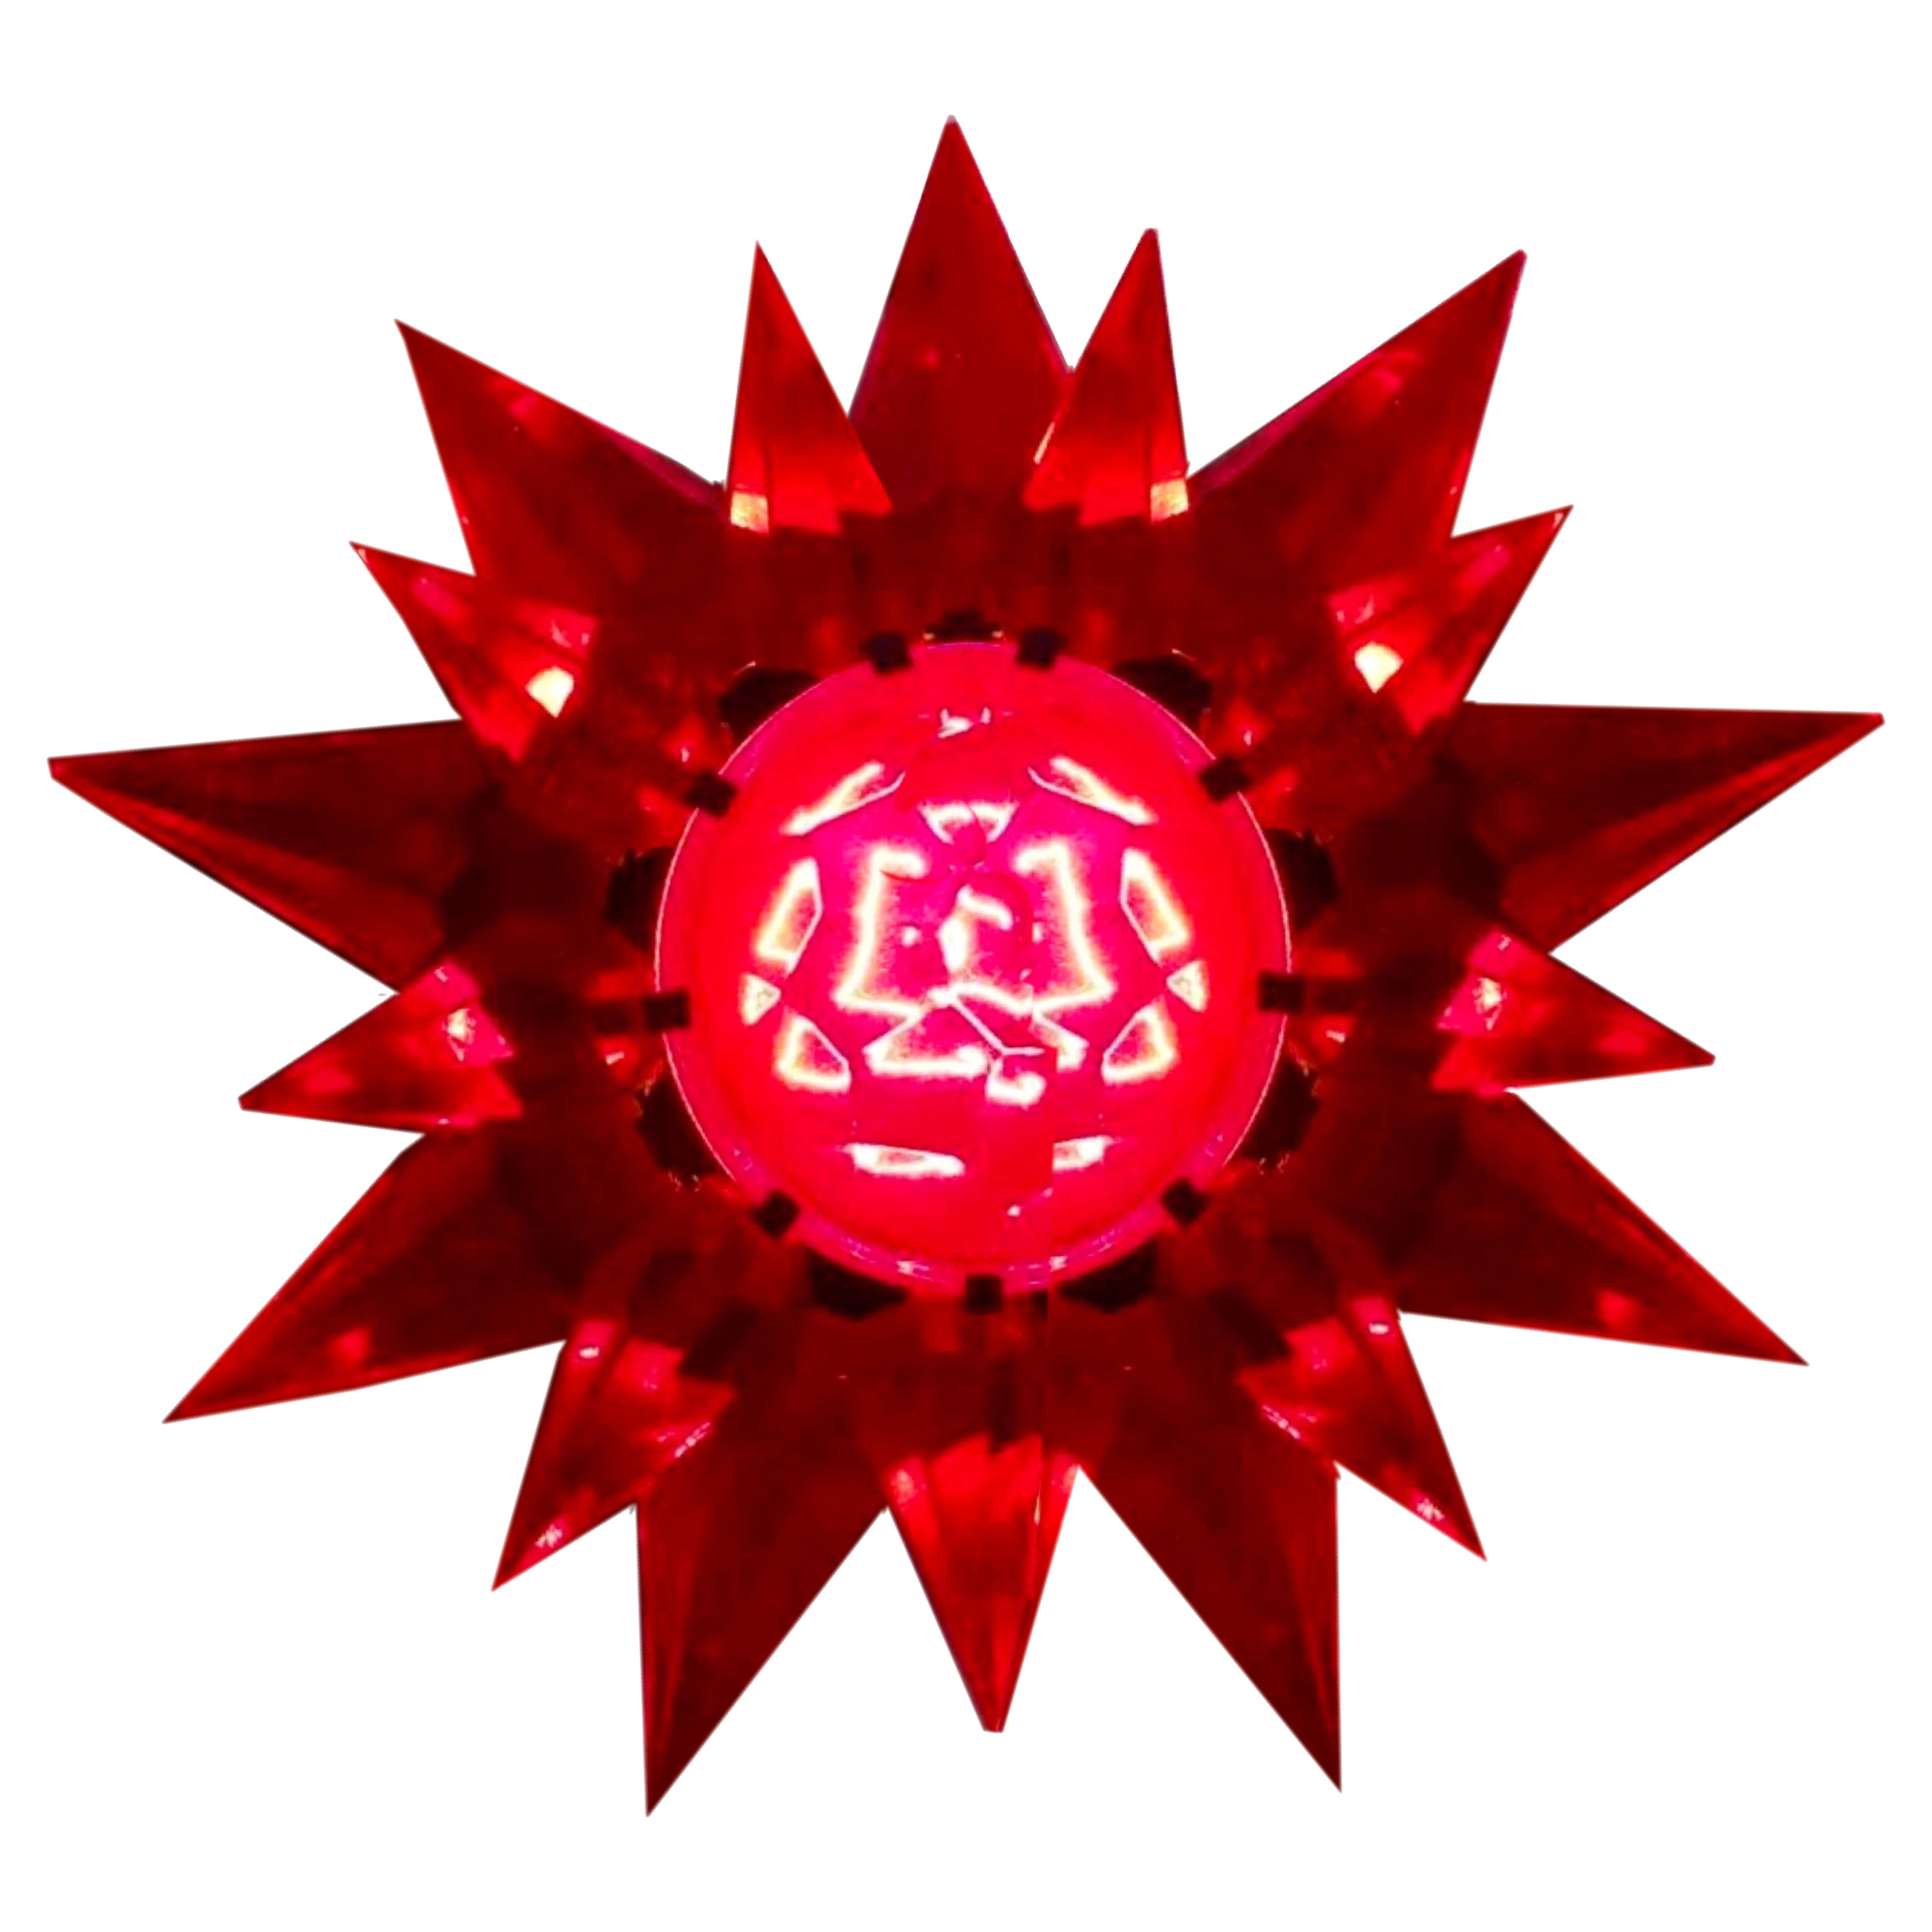 Matchless Wonder Star #910 Doppelreihige rote Kristall Holiday C-9 Glühbirne, USA, 1930er Jahre